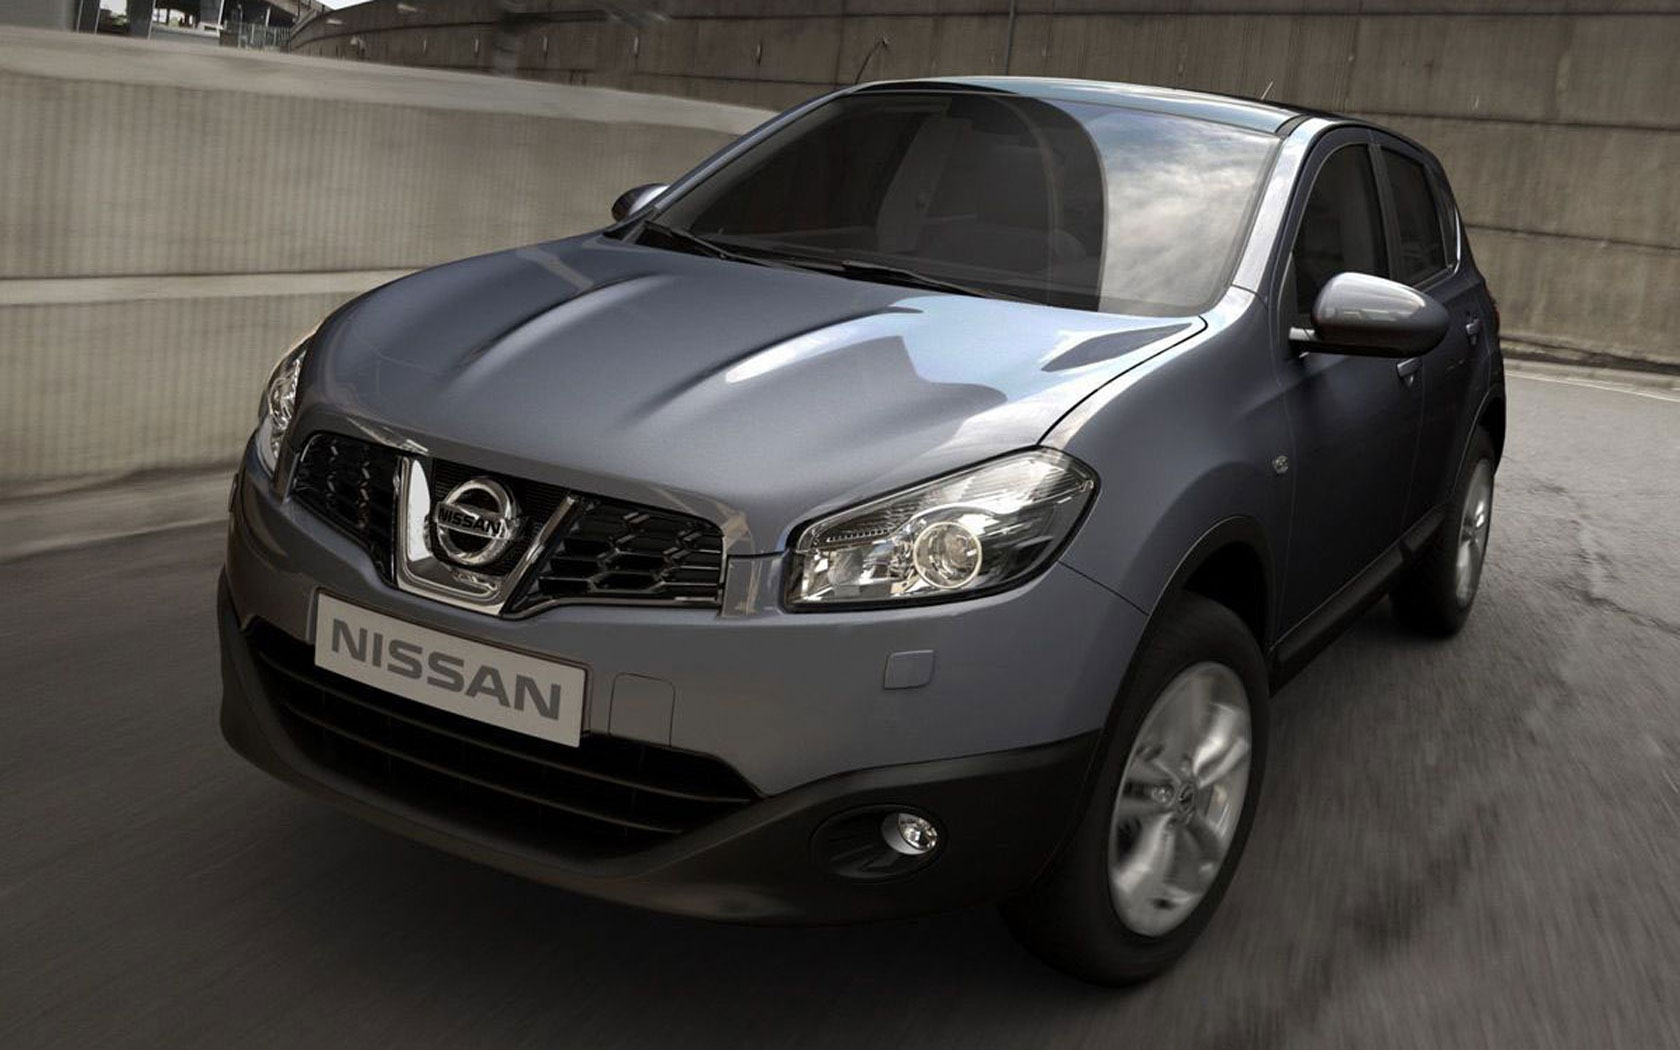  Nissan Qashqai (2010-2013)